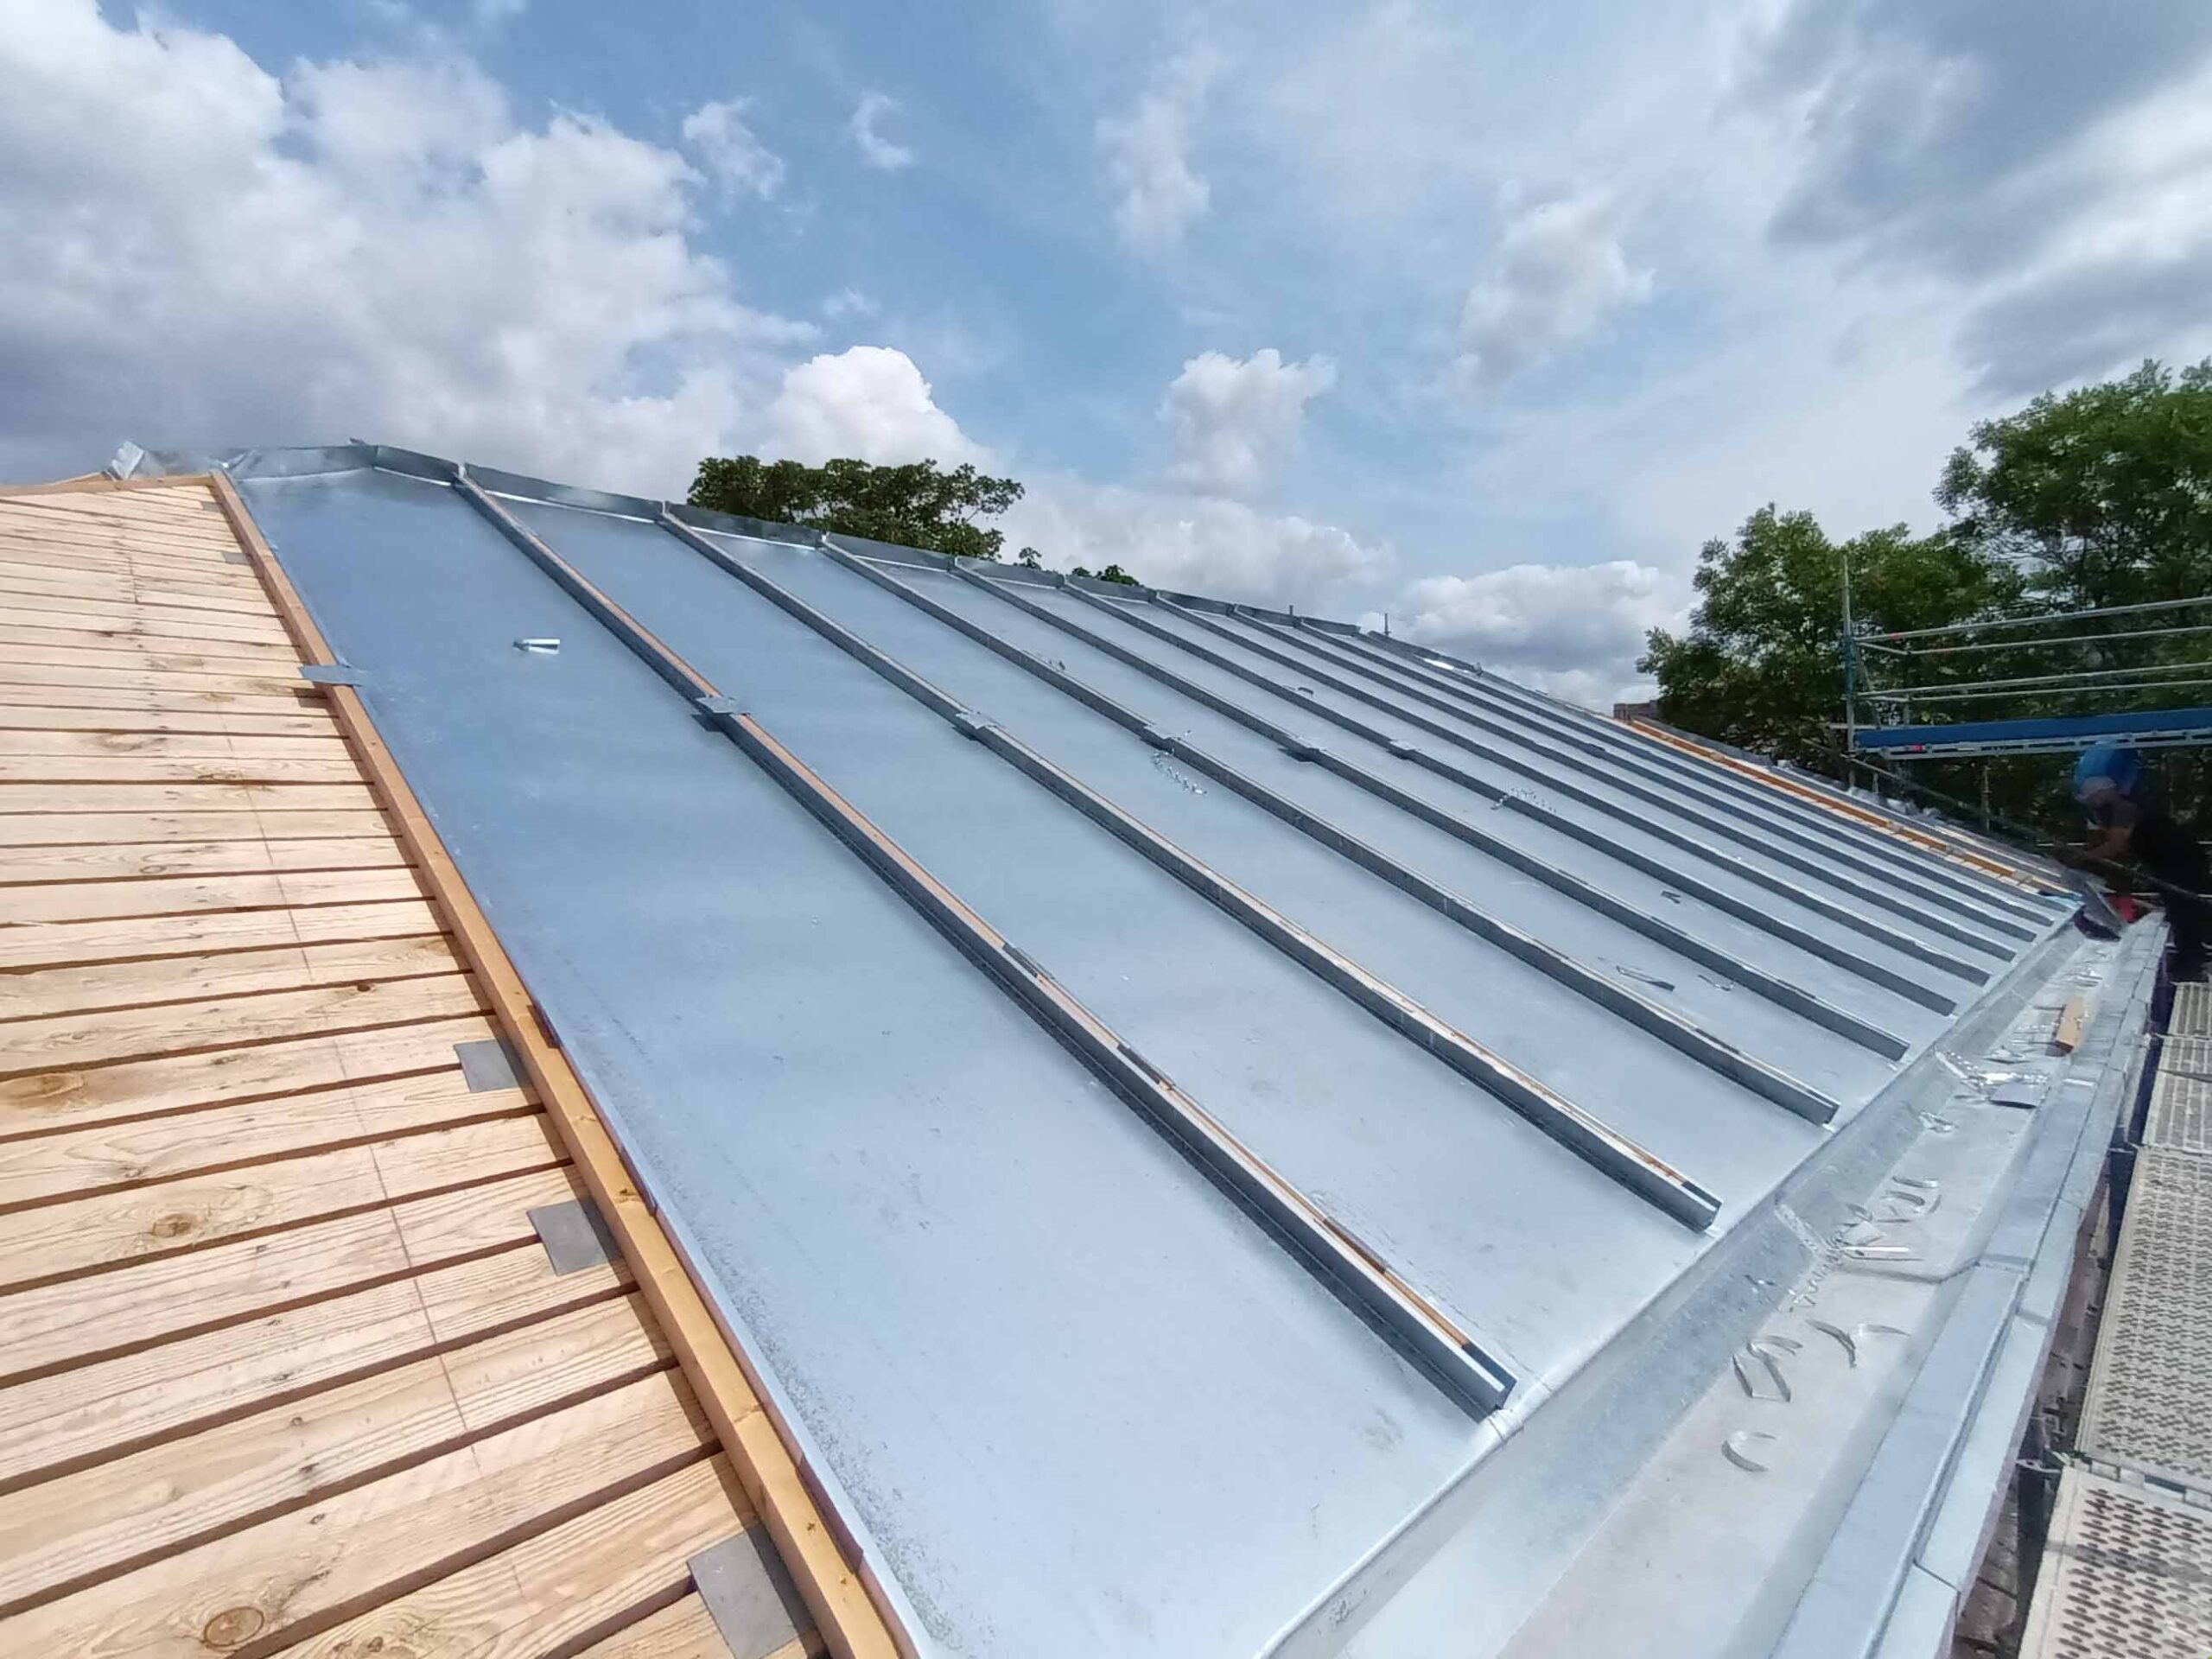 Deschacht fournit des feuilles de zinc pour la rénovation des toits